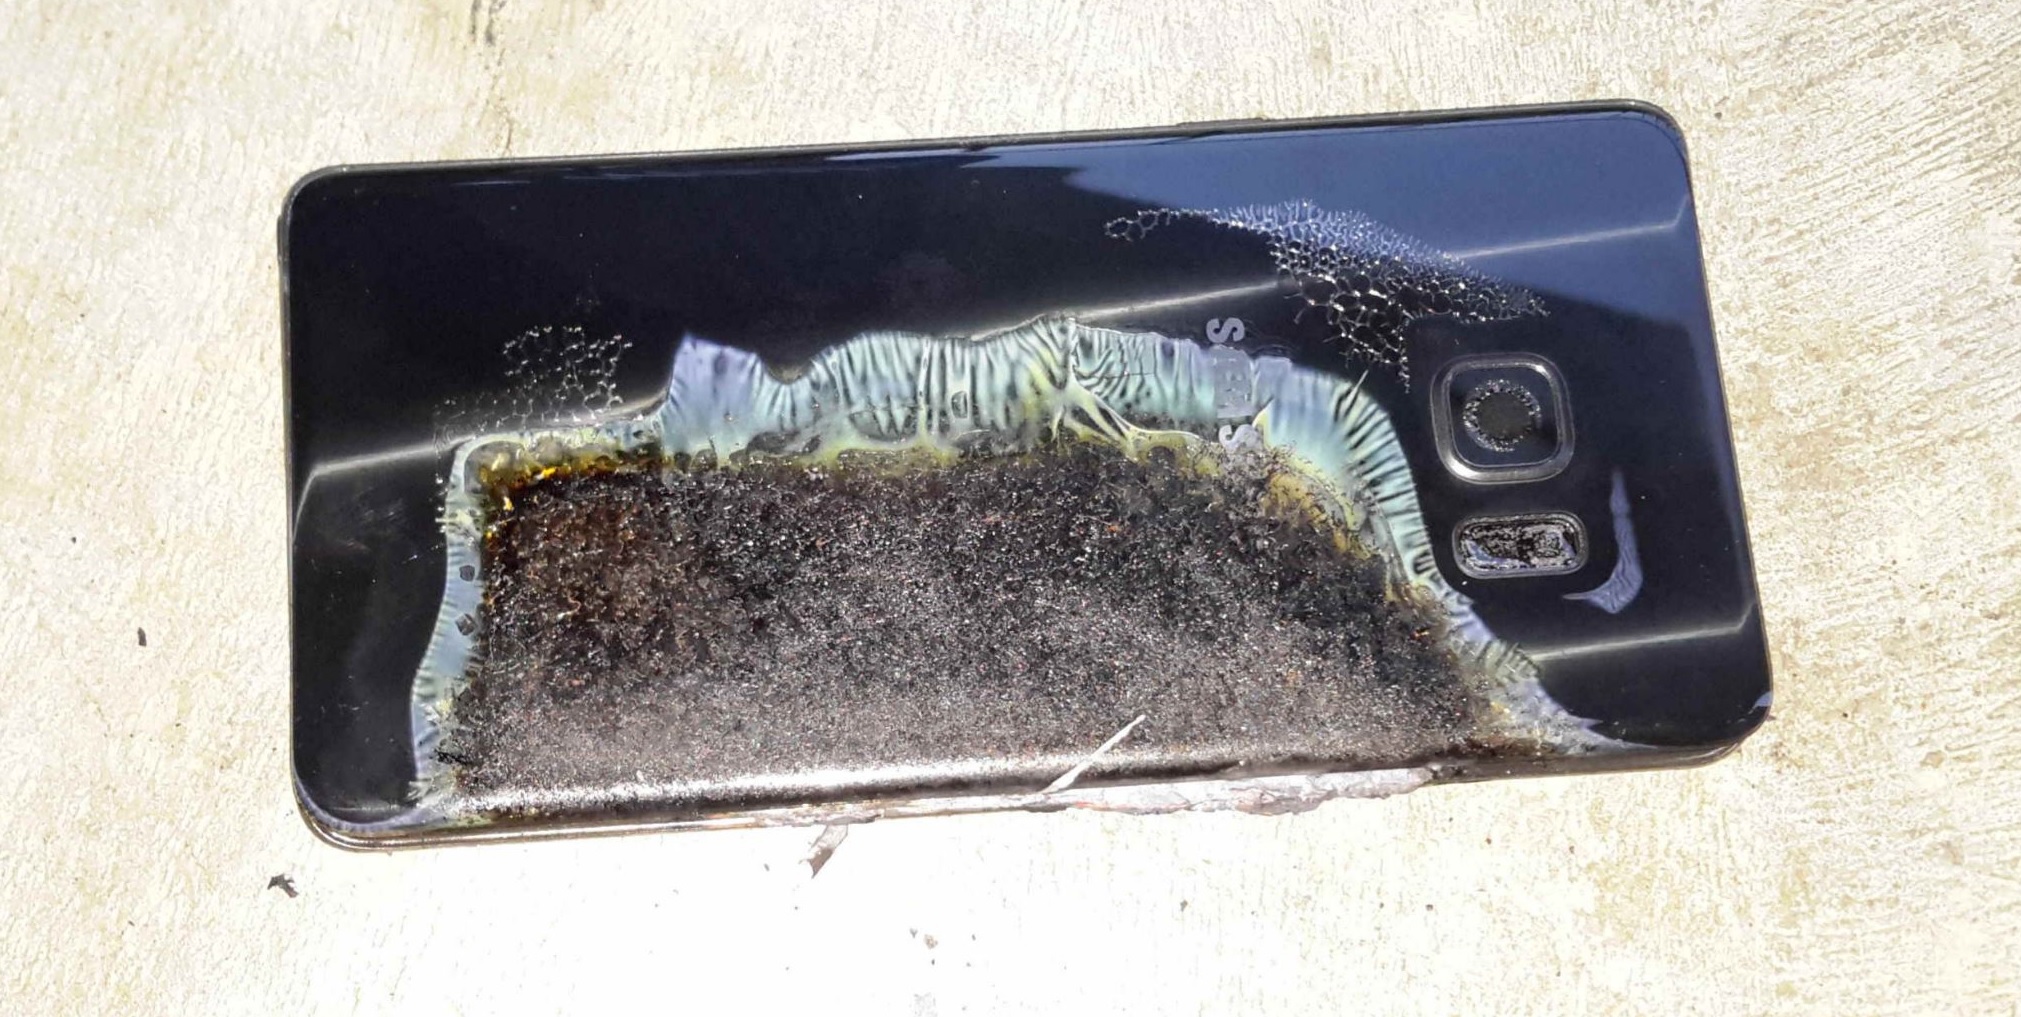 Baterías que explotan, el caso Samsung y otros | Rincón de la Tecnología